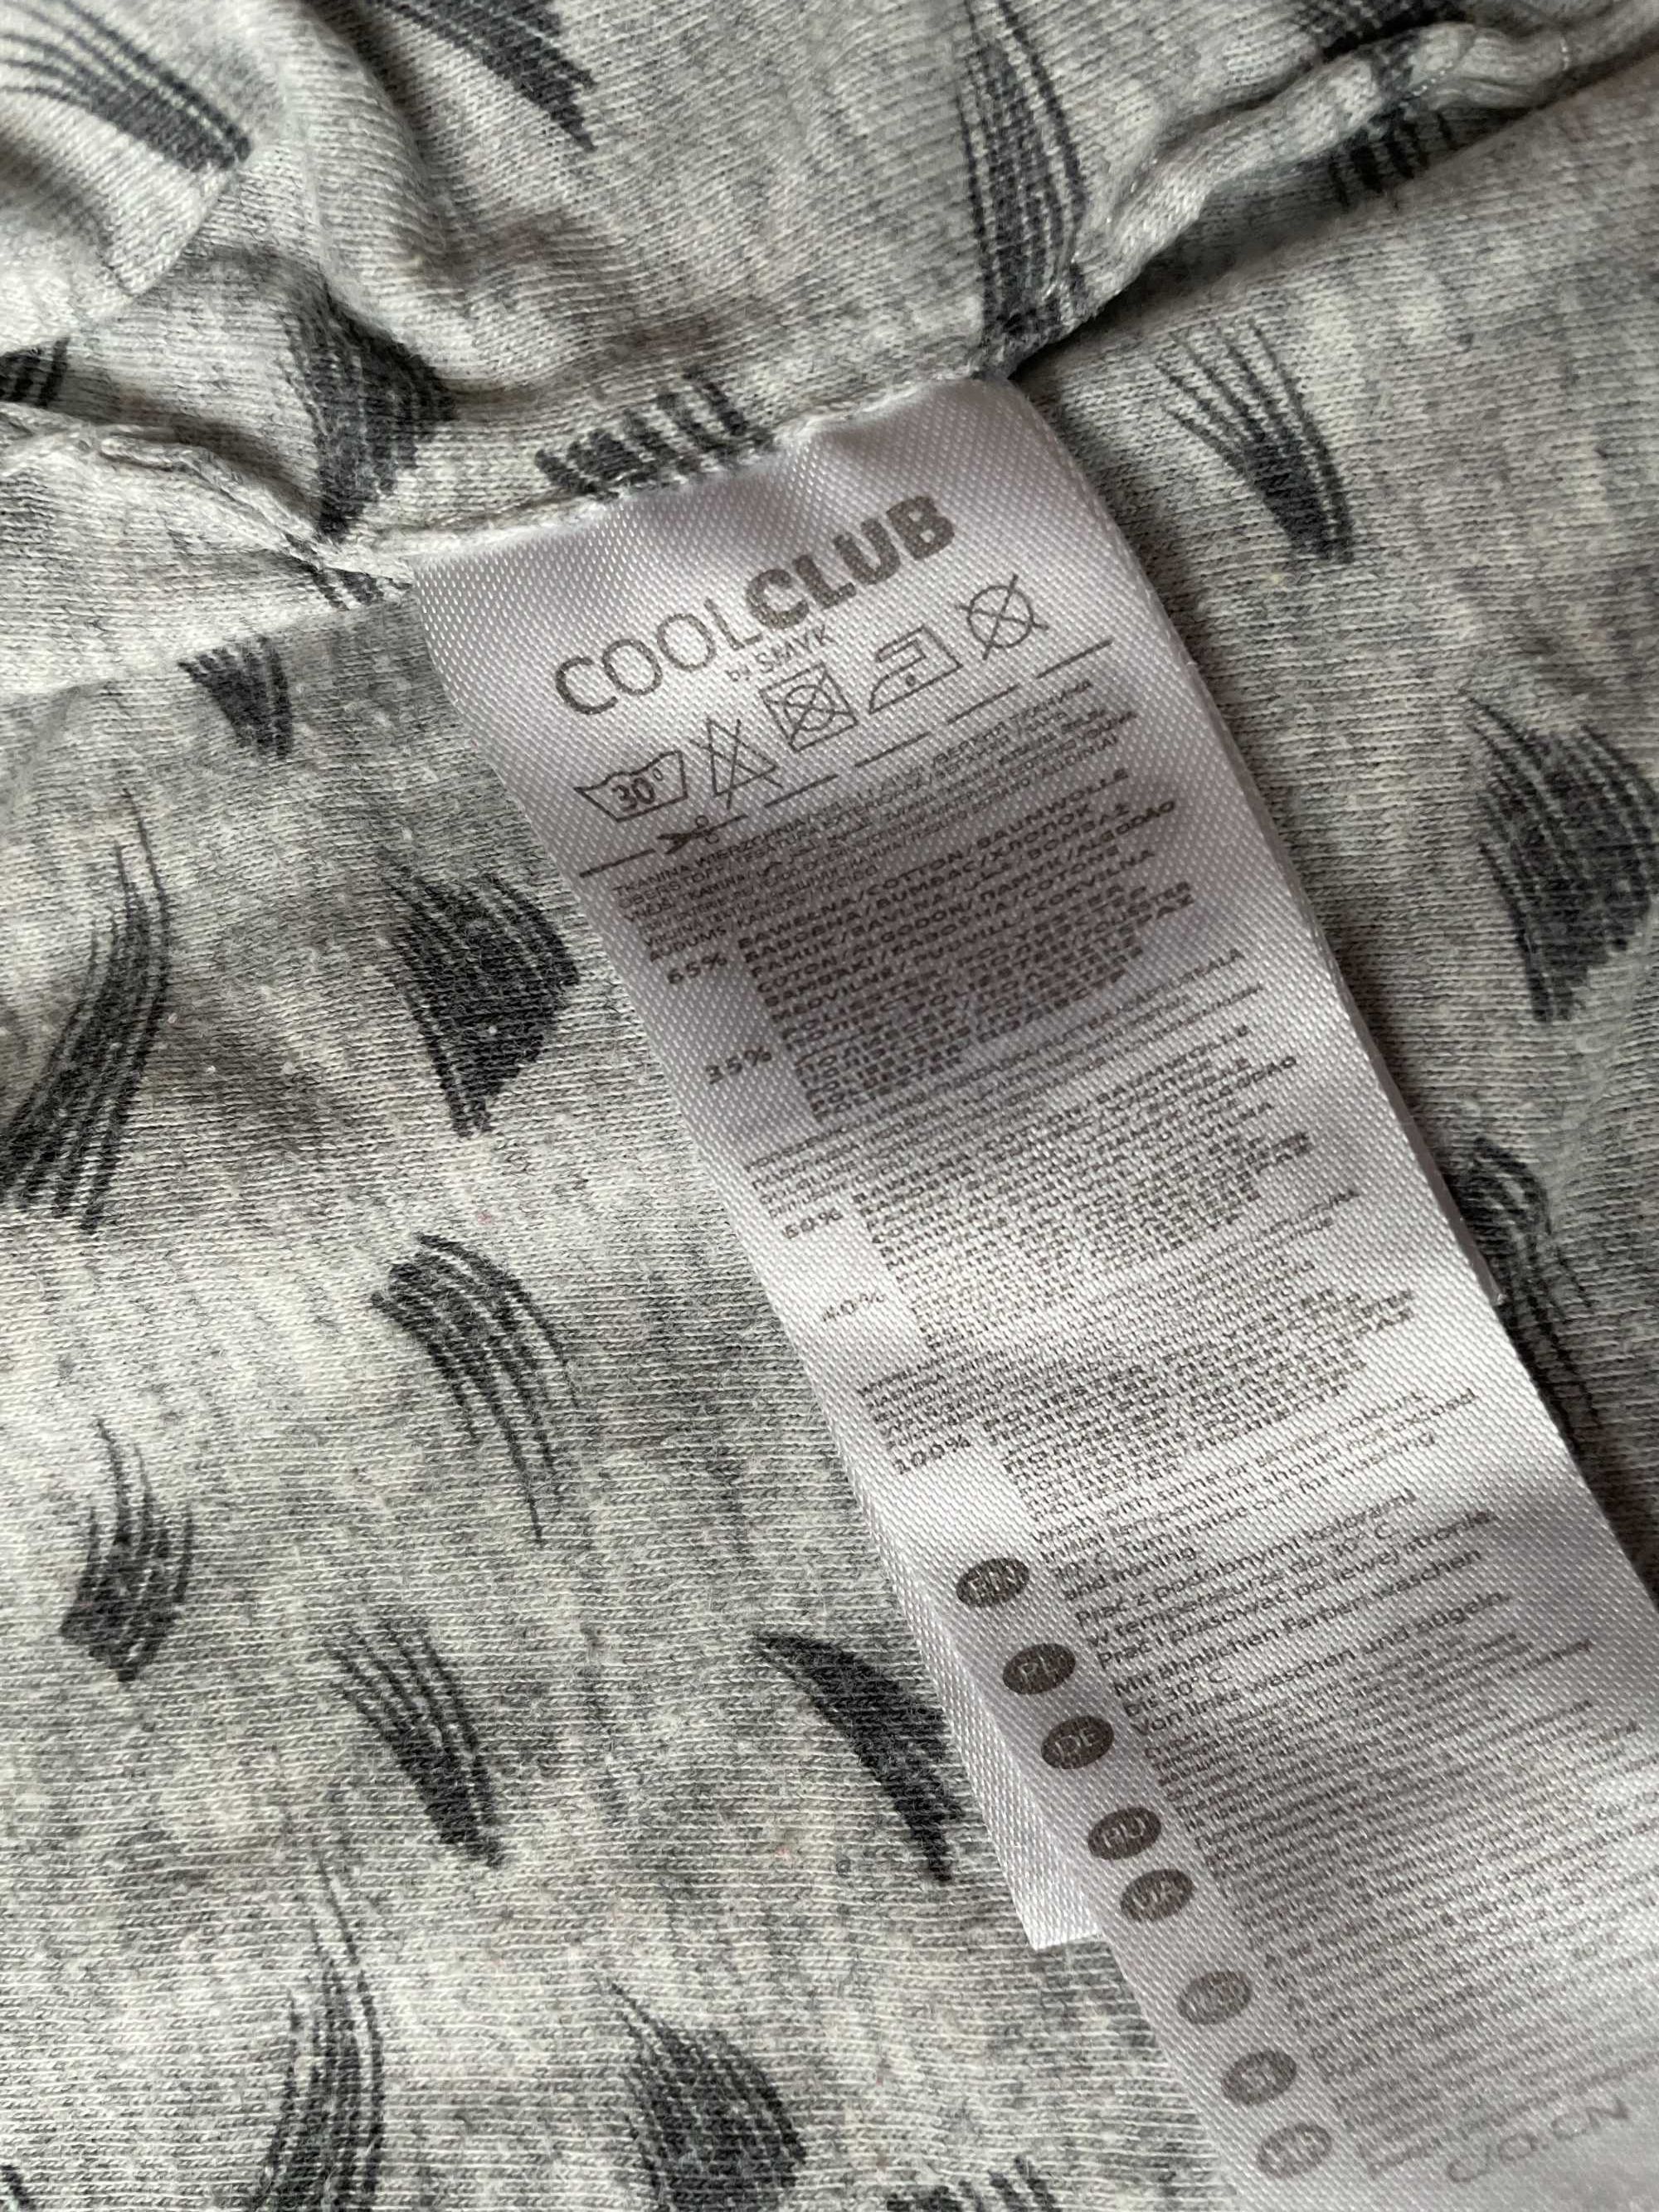 Bluza niemowlęca Cool Club (szara, 56 cm)